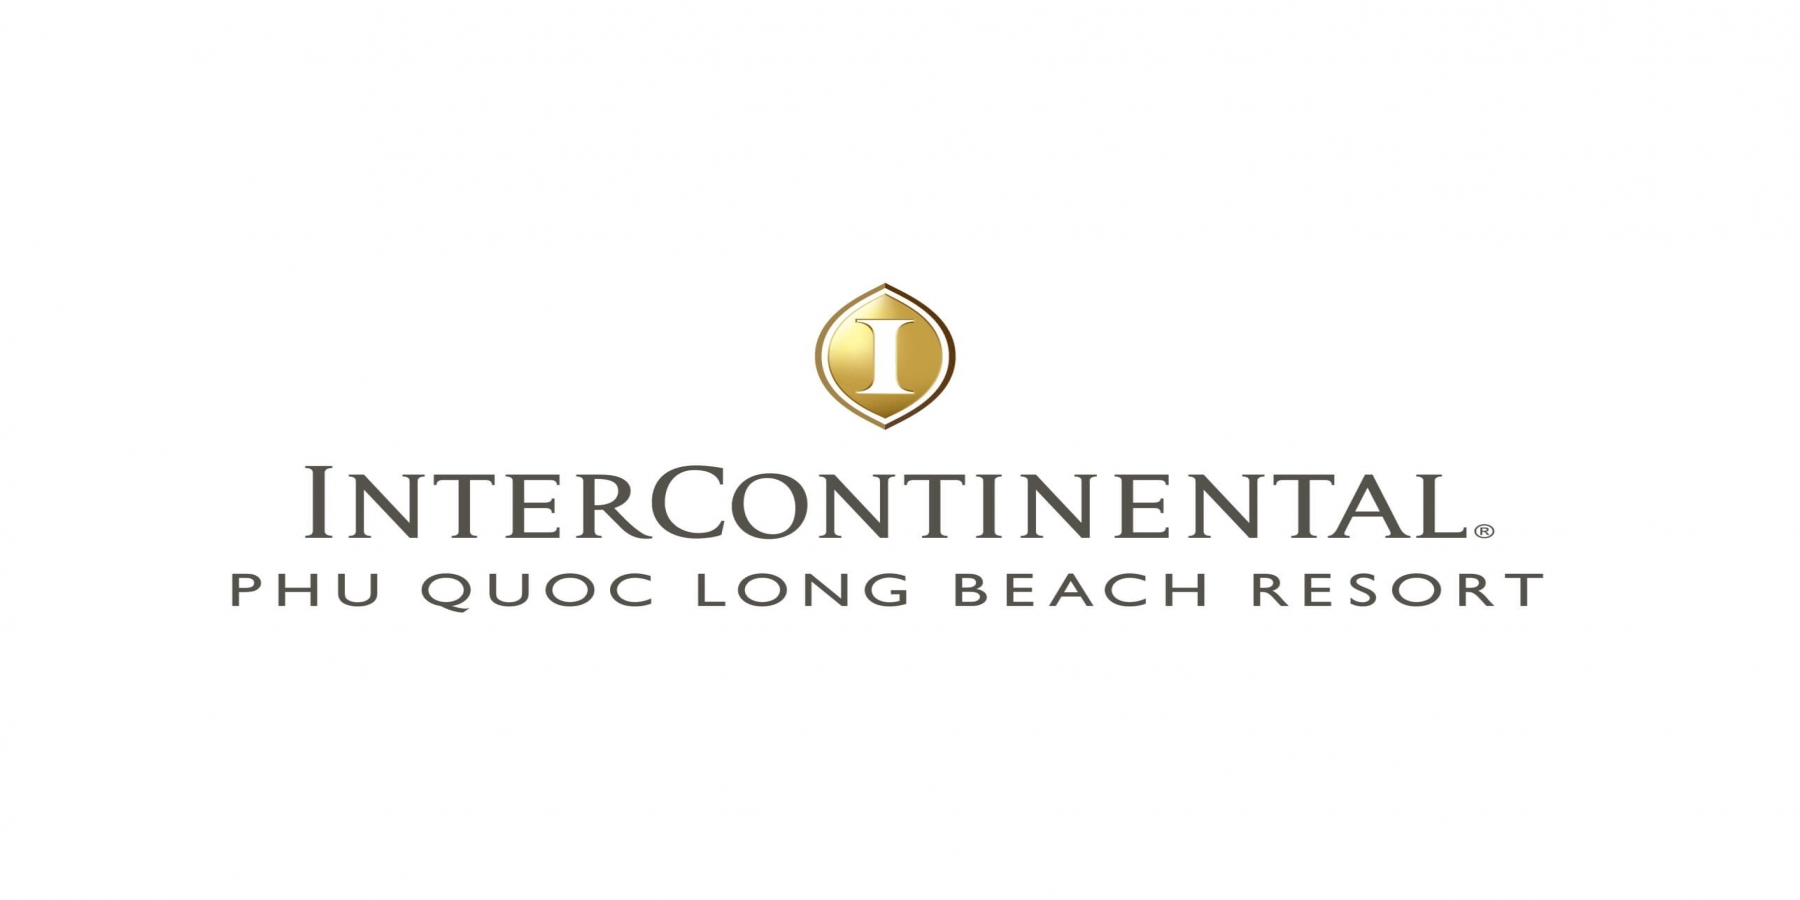 Thông tin khái quát về doanh nghiệp Intercontinental Phú Quốc Long Beach